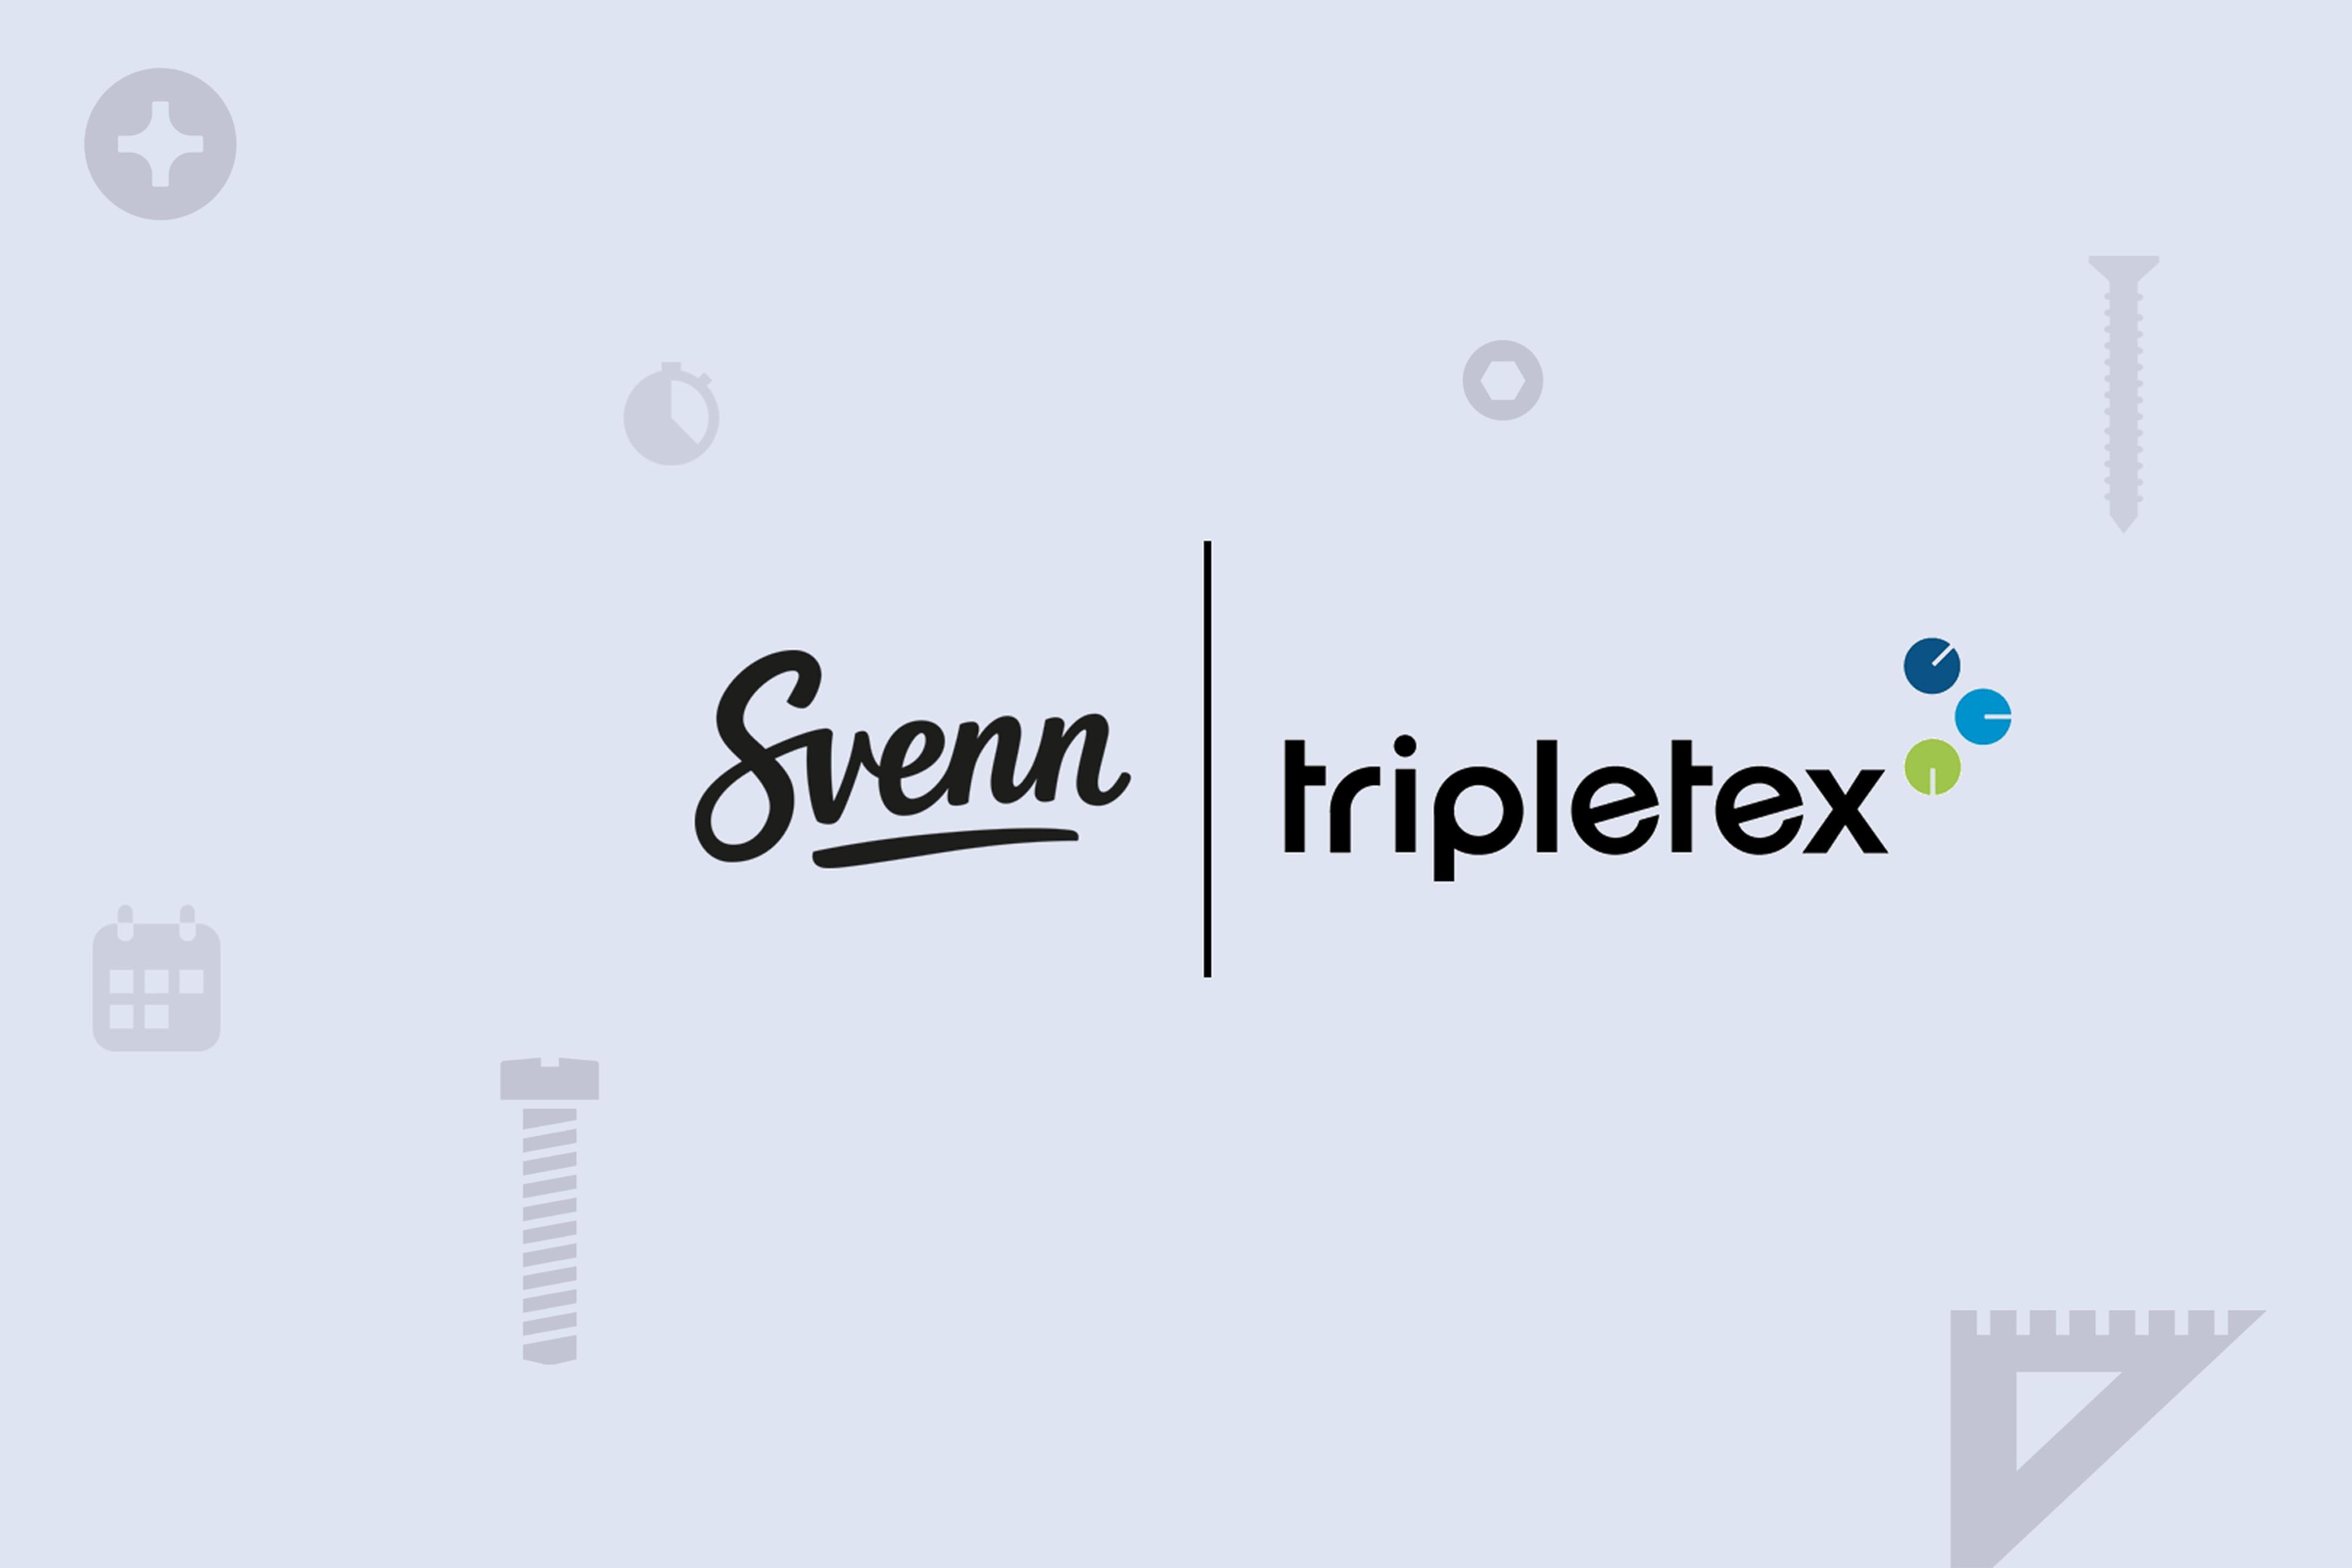 Tripletex-integrasjon i Svenn